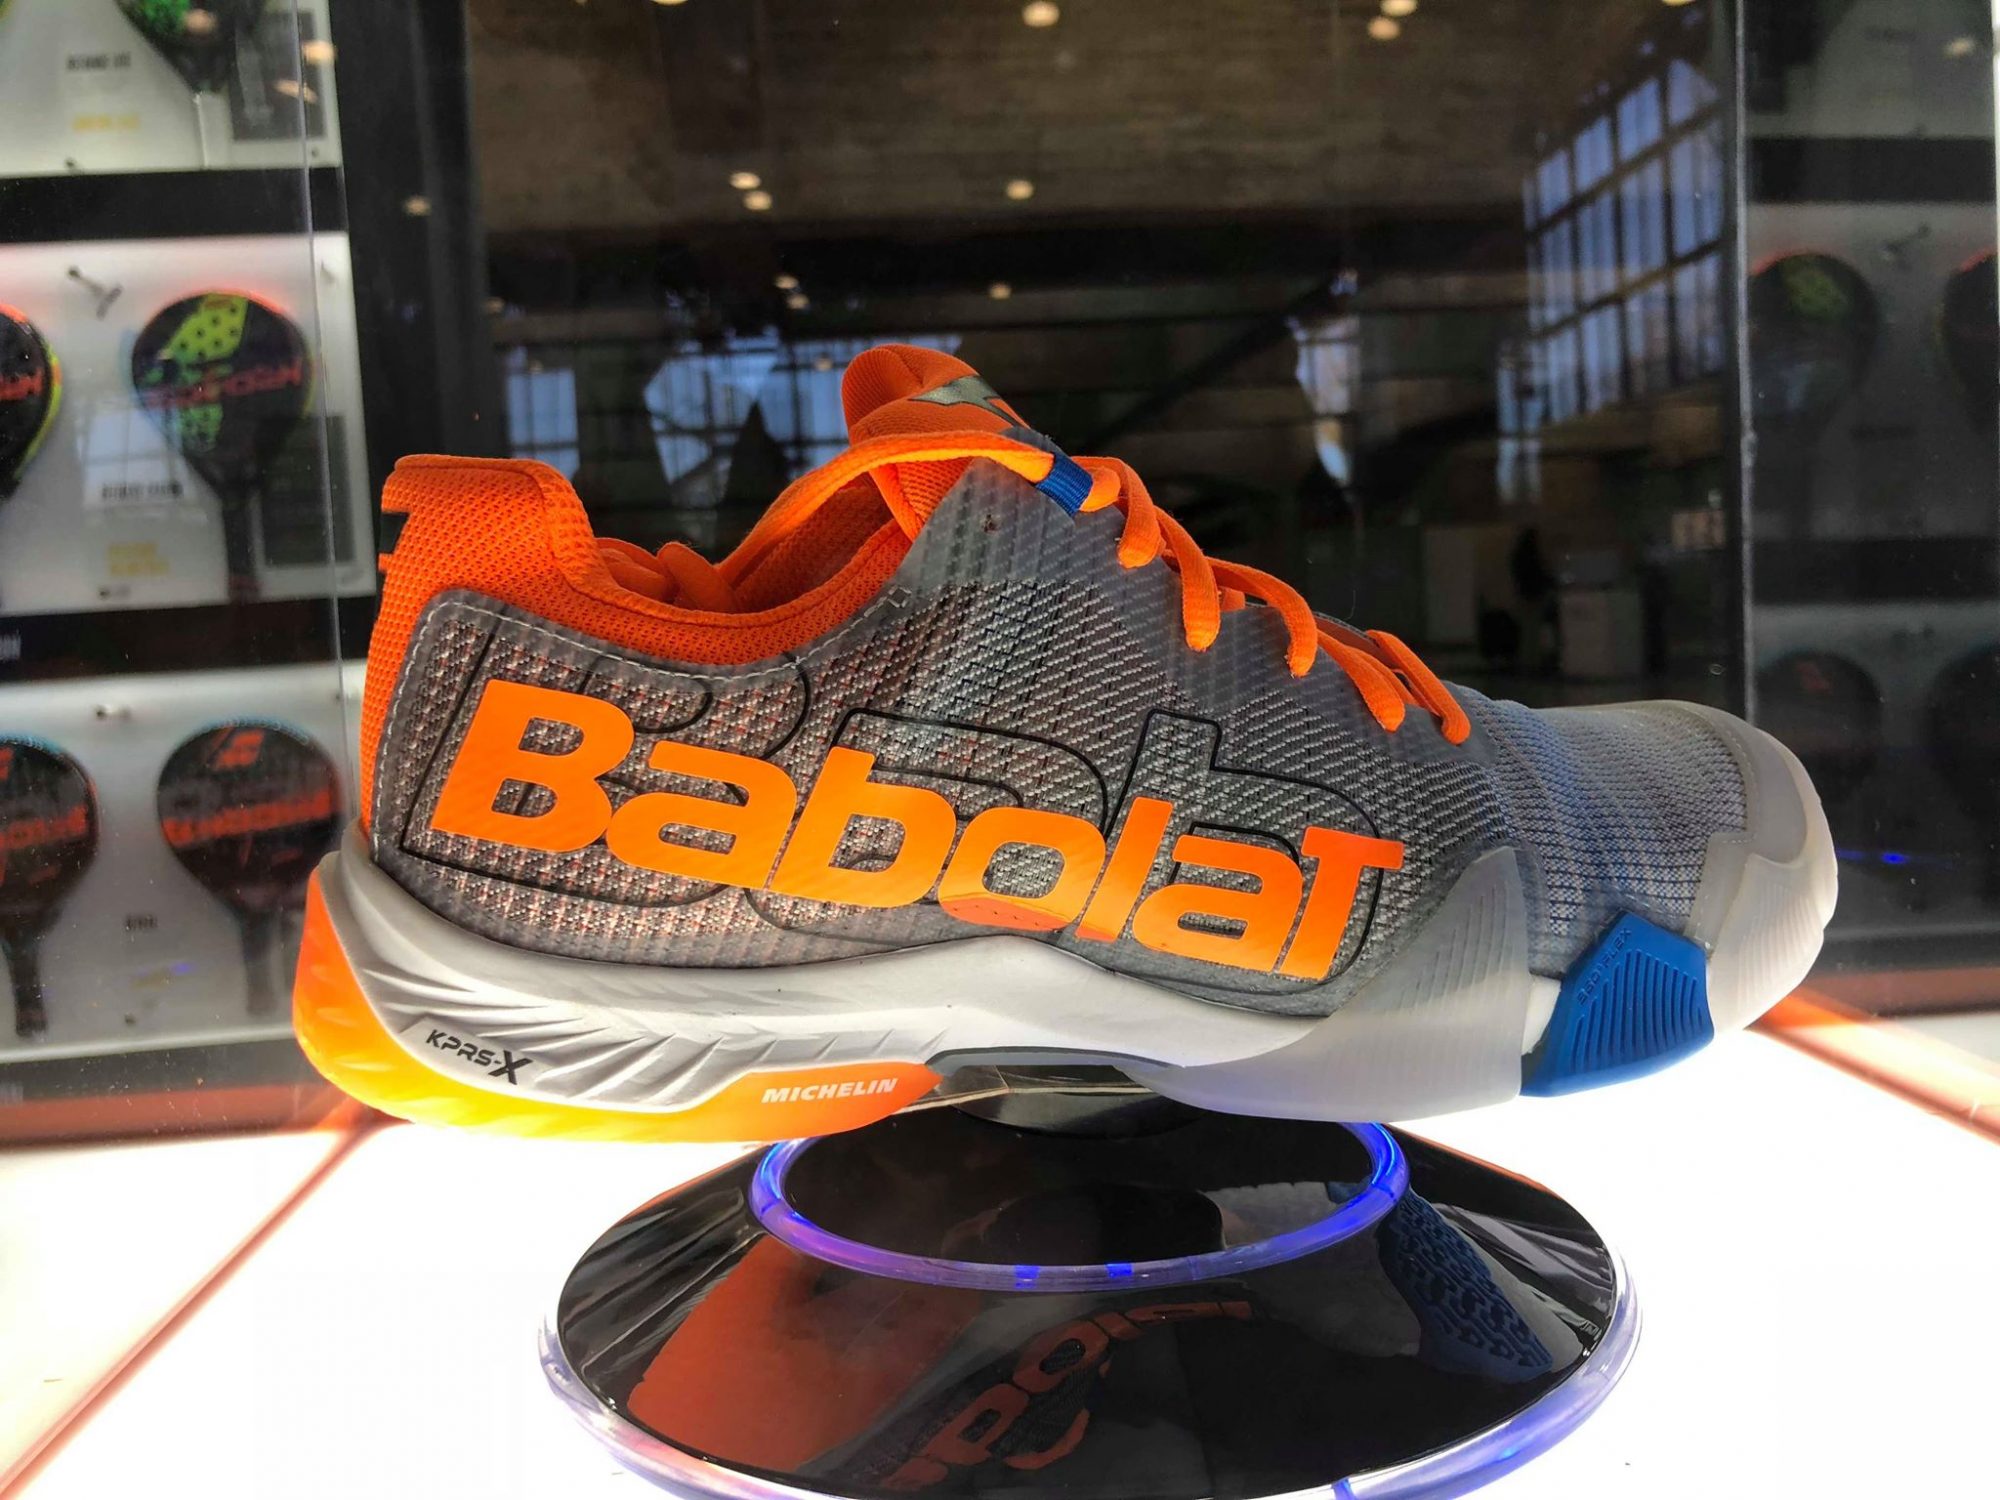 Die neuen Schuhe Babolat Jet 2019